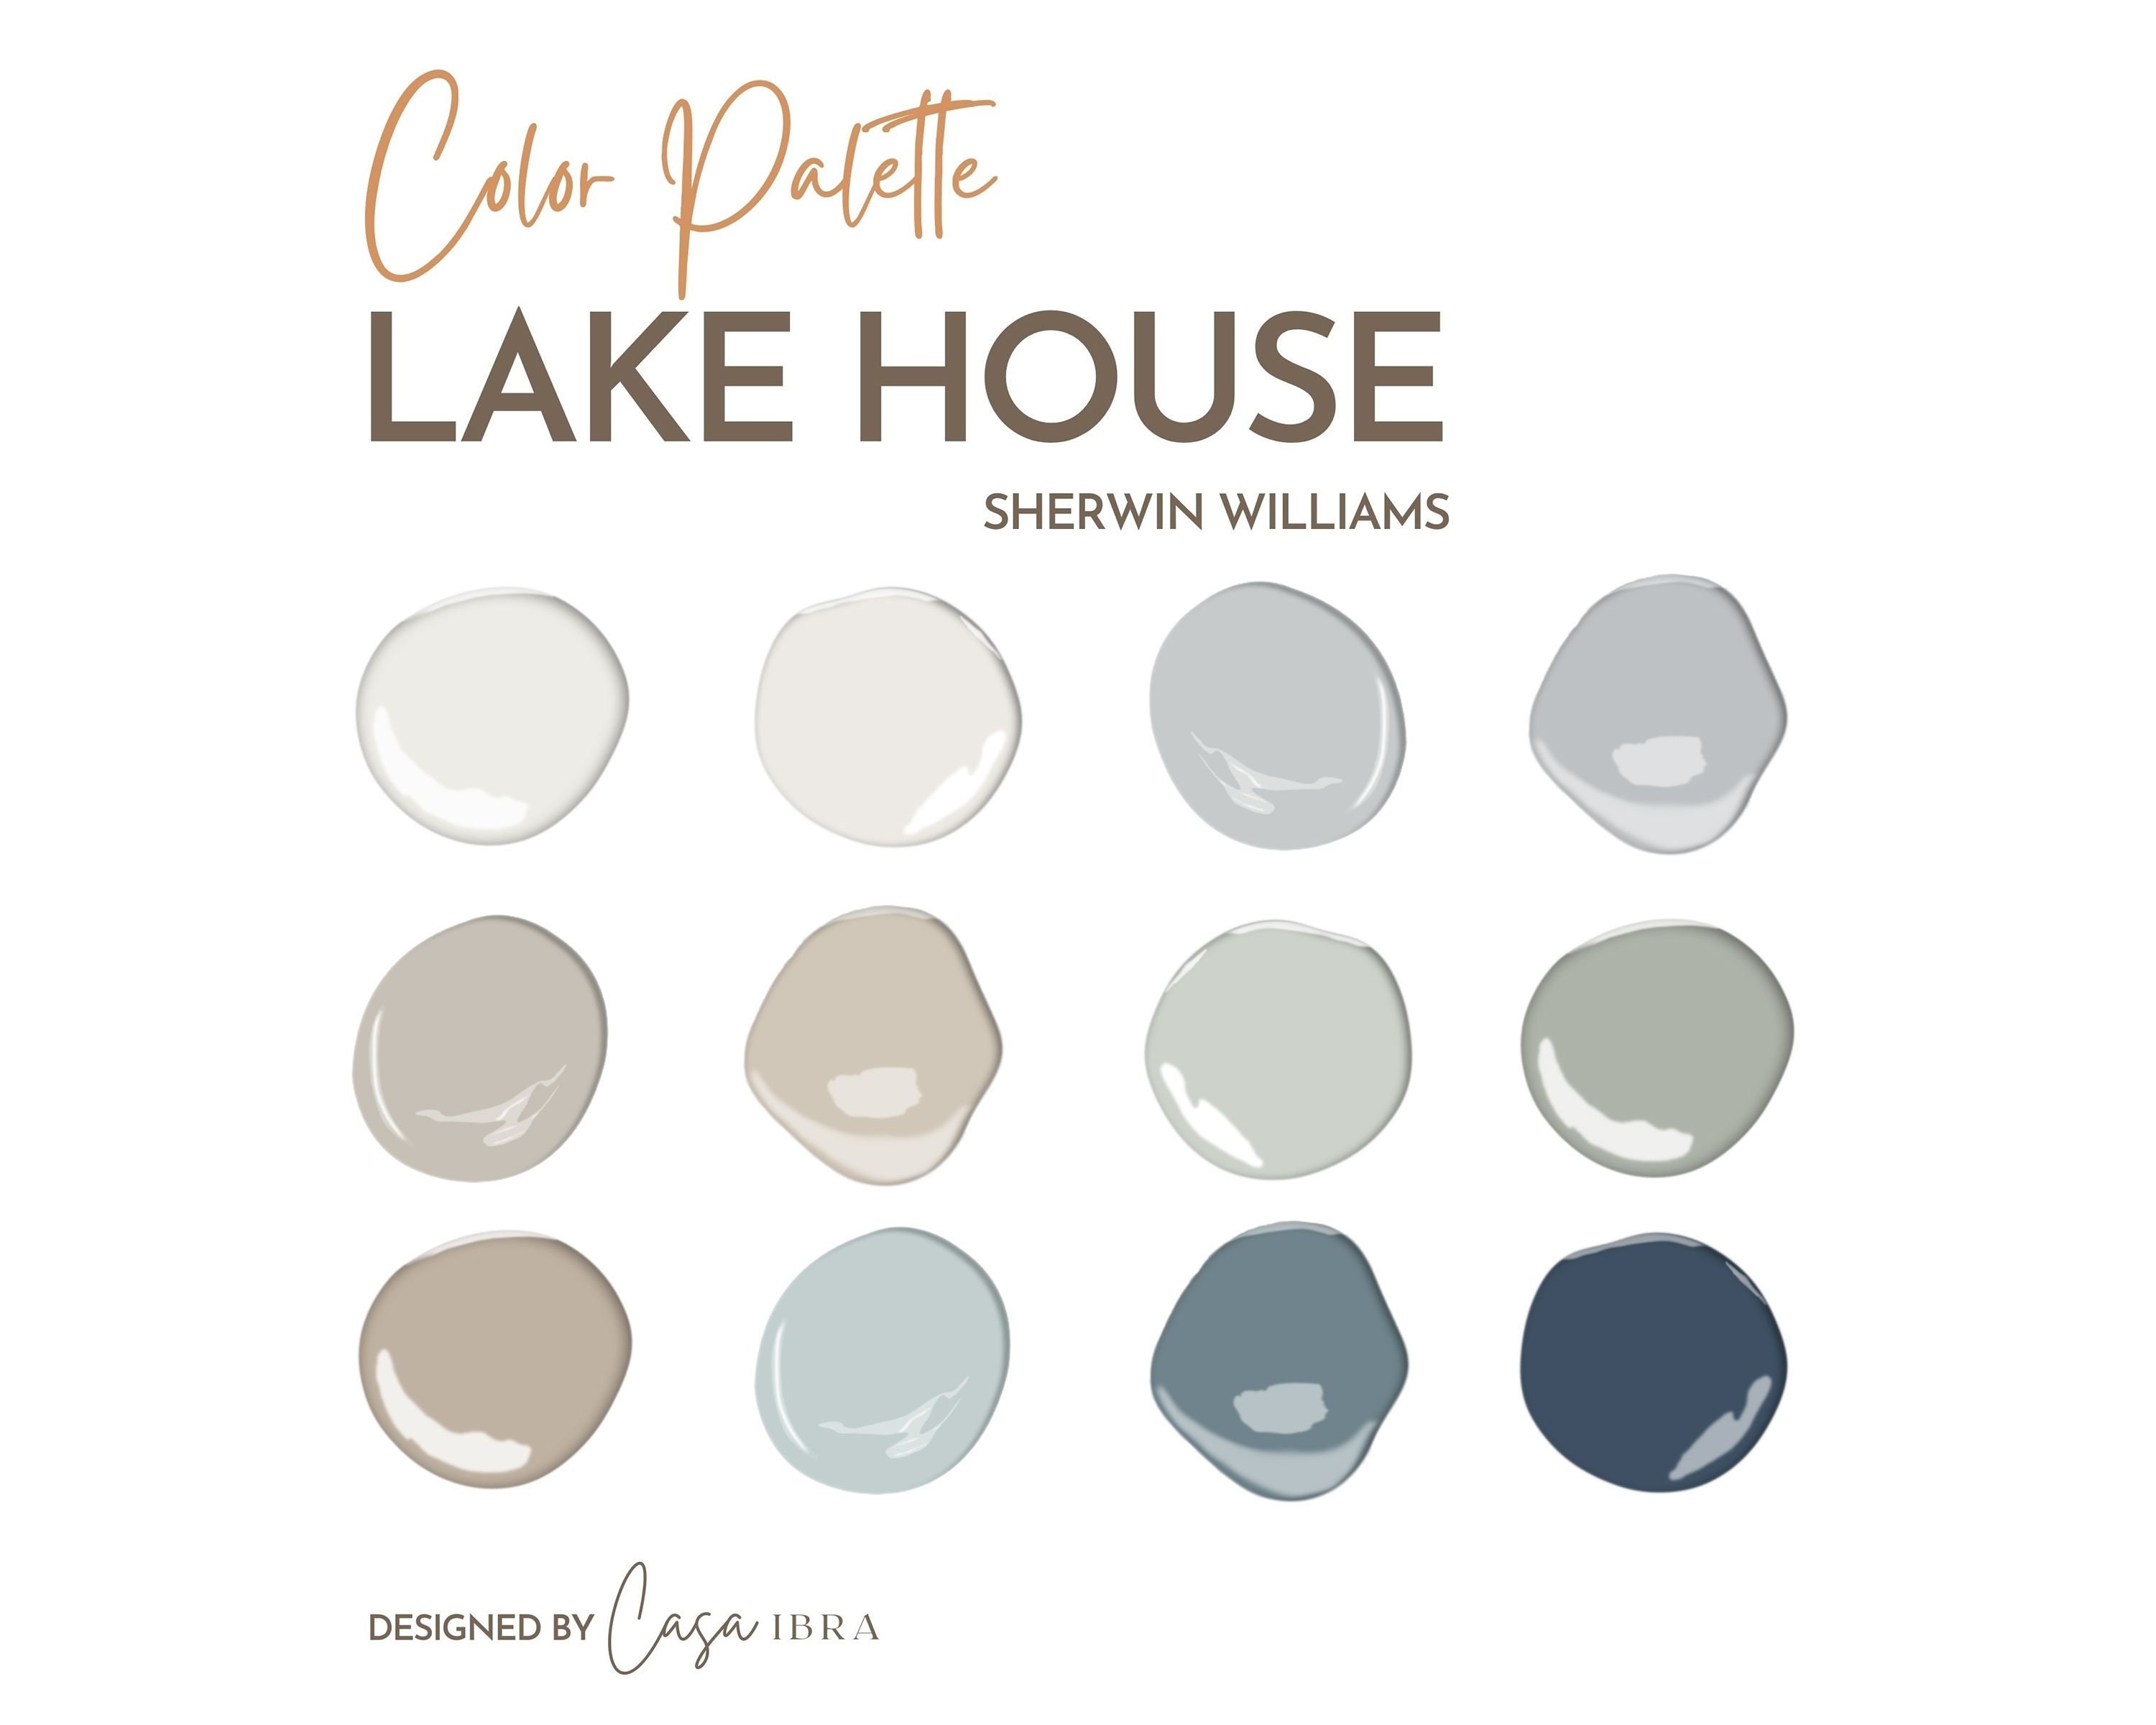 Whole House Color Palette: How to Choose a Paint Color Scheme